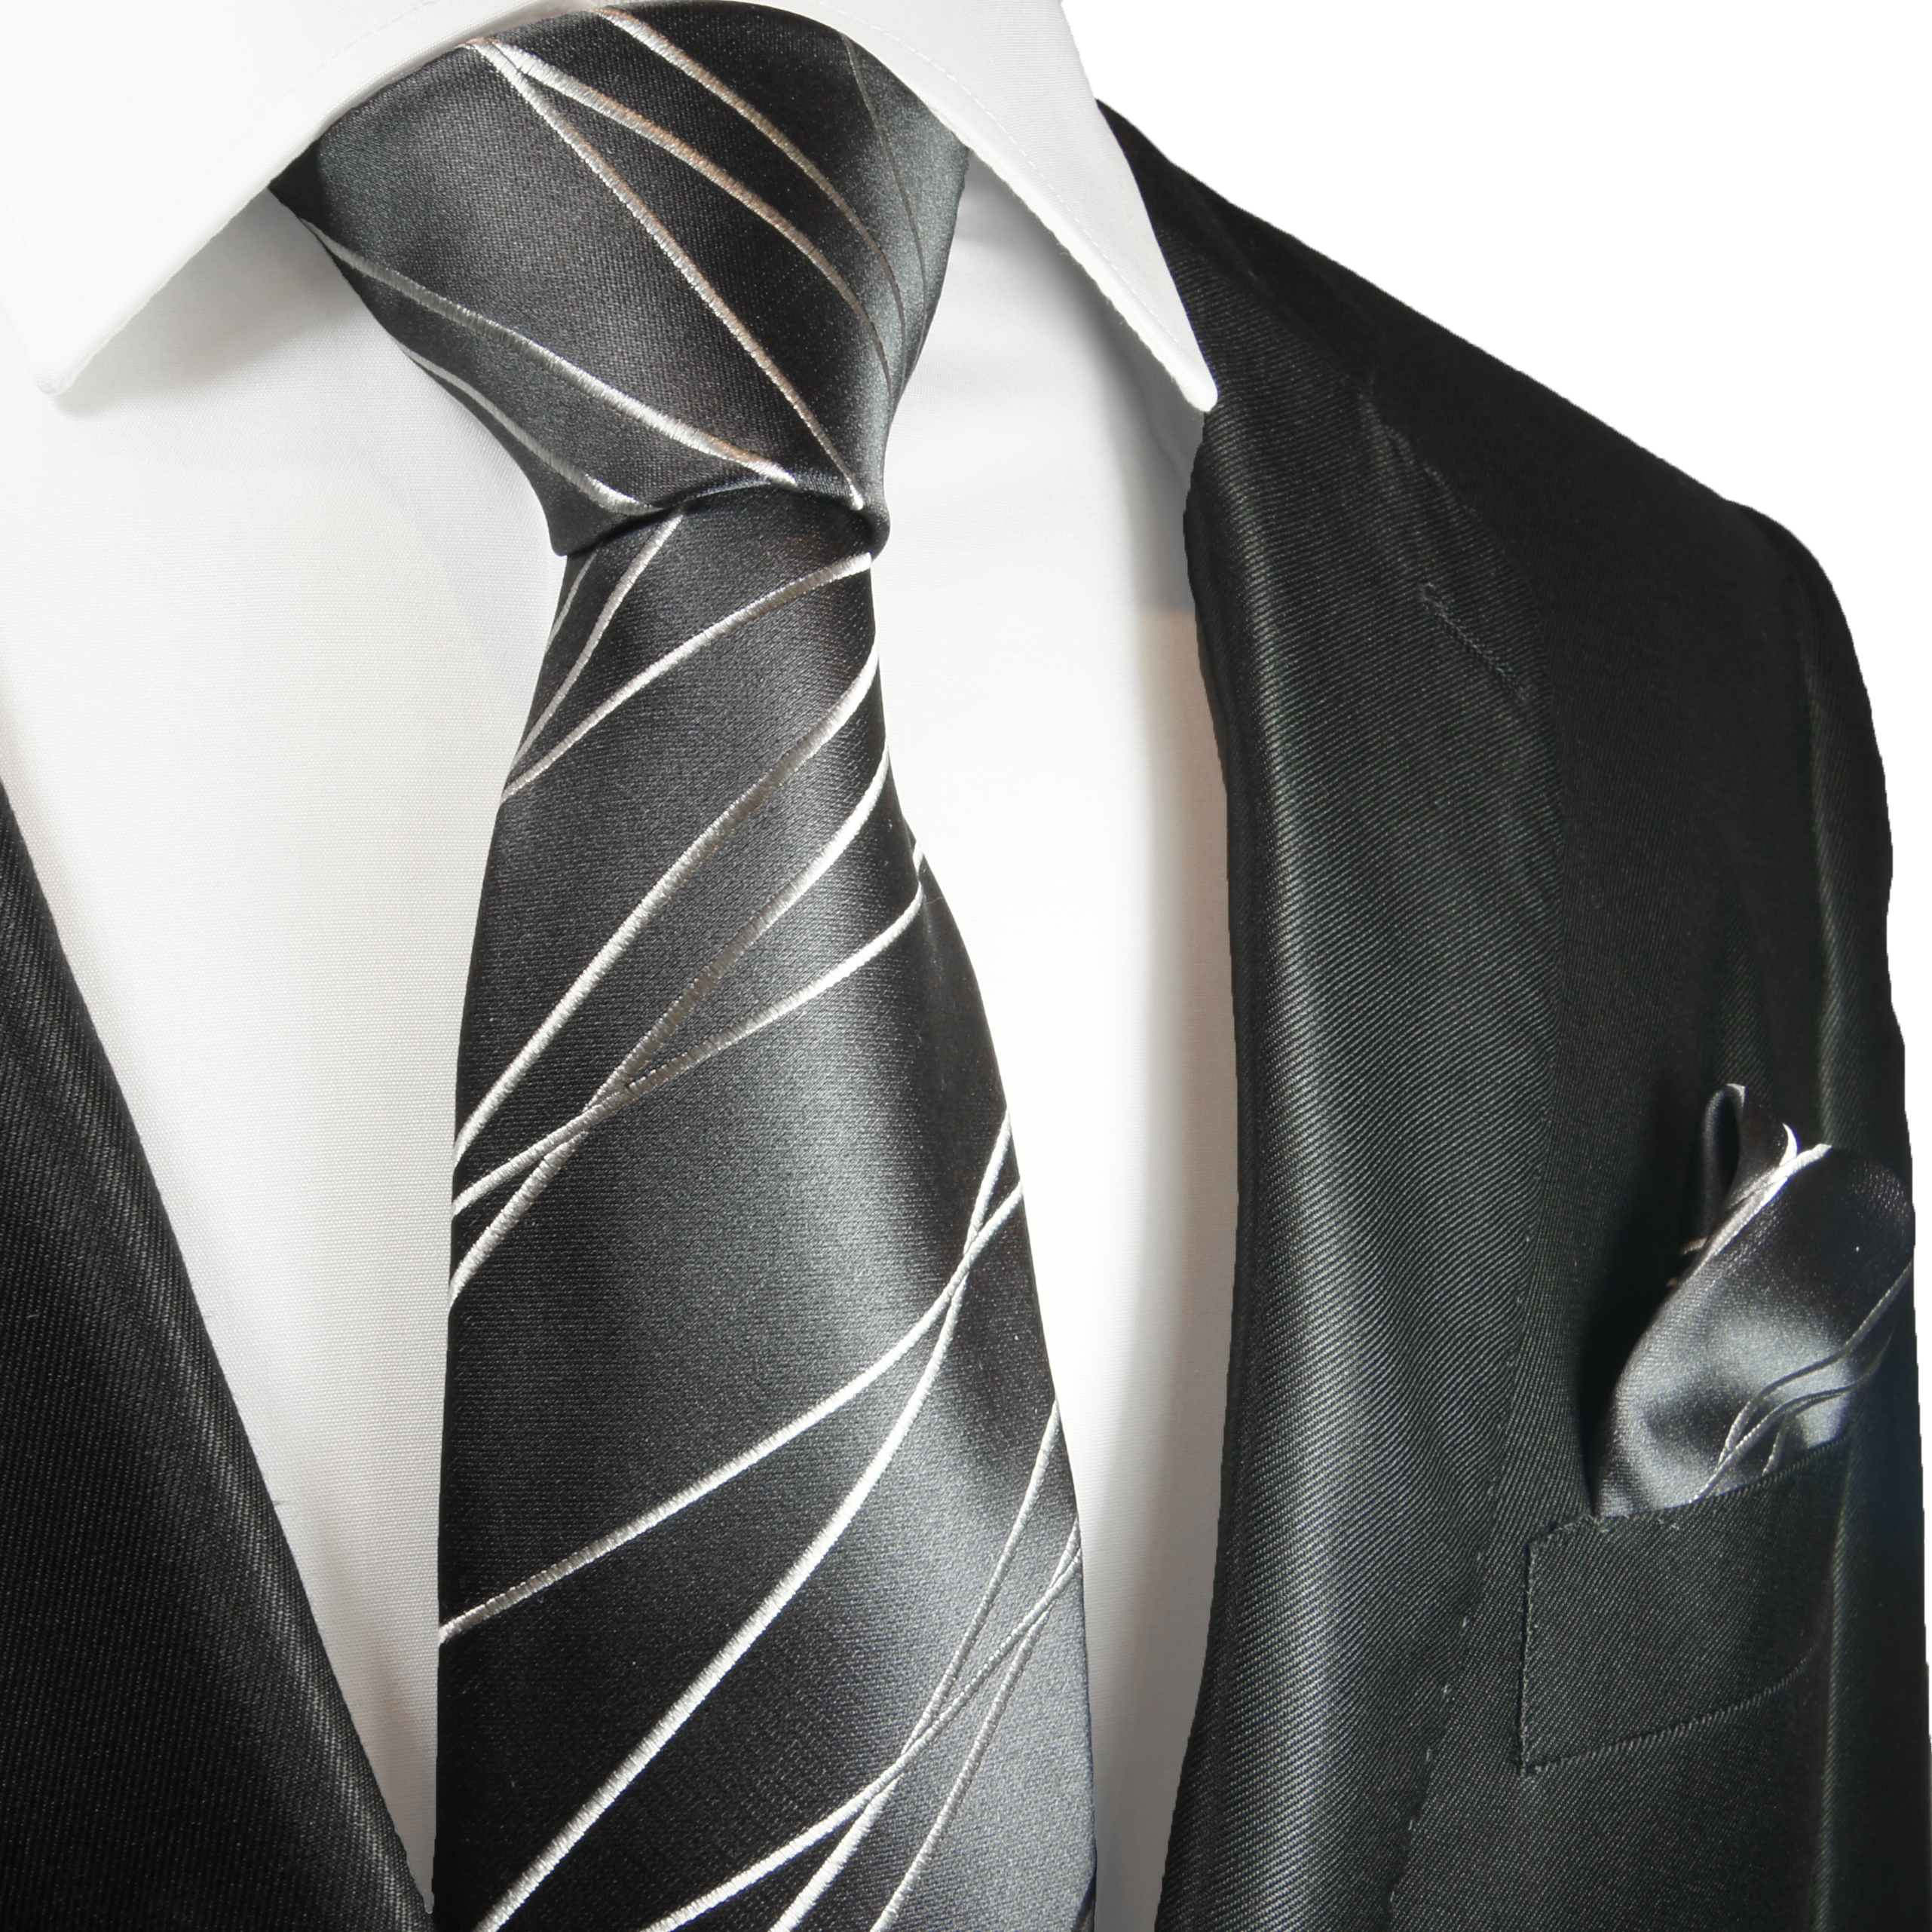 Krawatte anthrazit silber gestreift | HIER KLICKEN - Paul Malone Shop